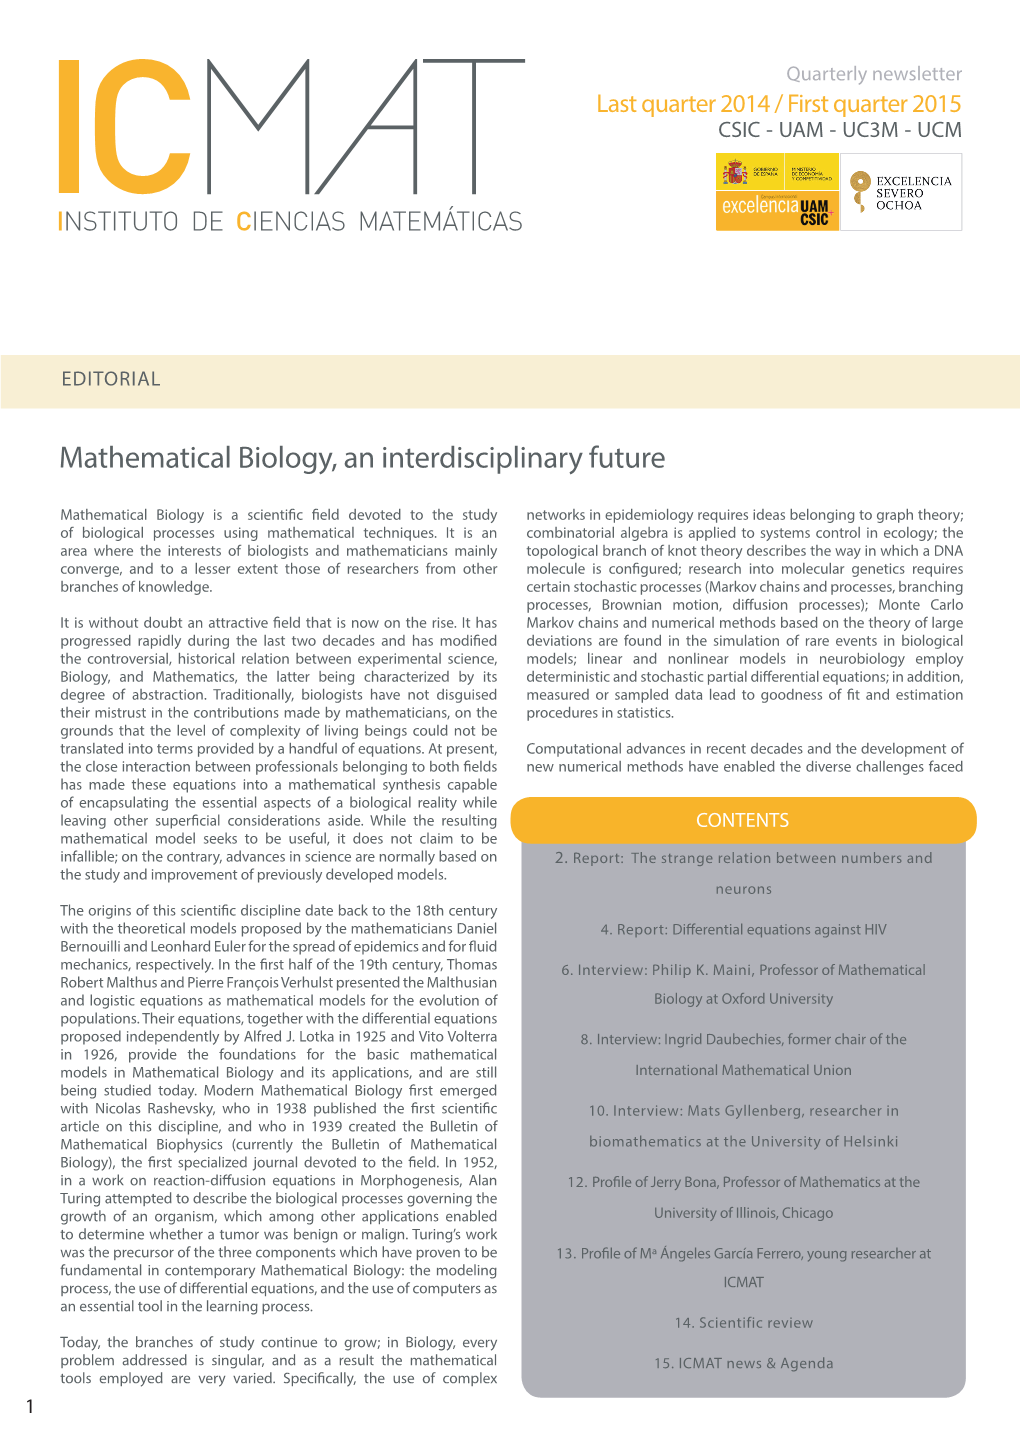 Mathematical Biology, an Interdisciplinary Future